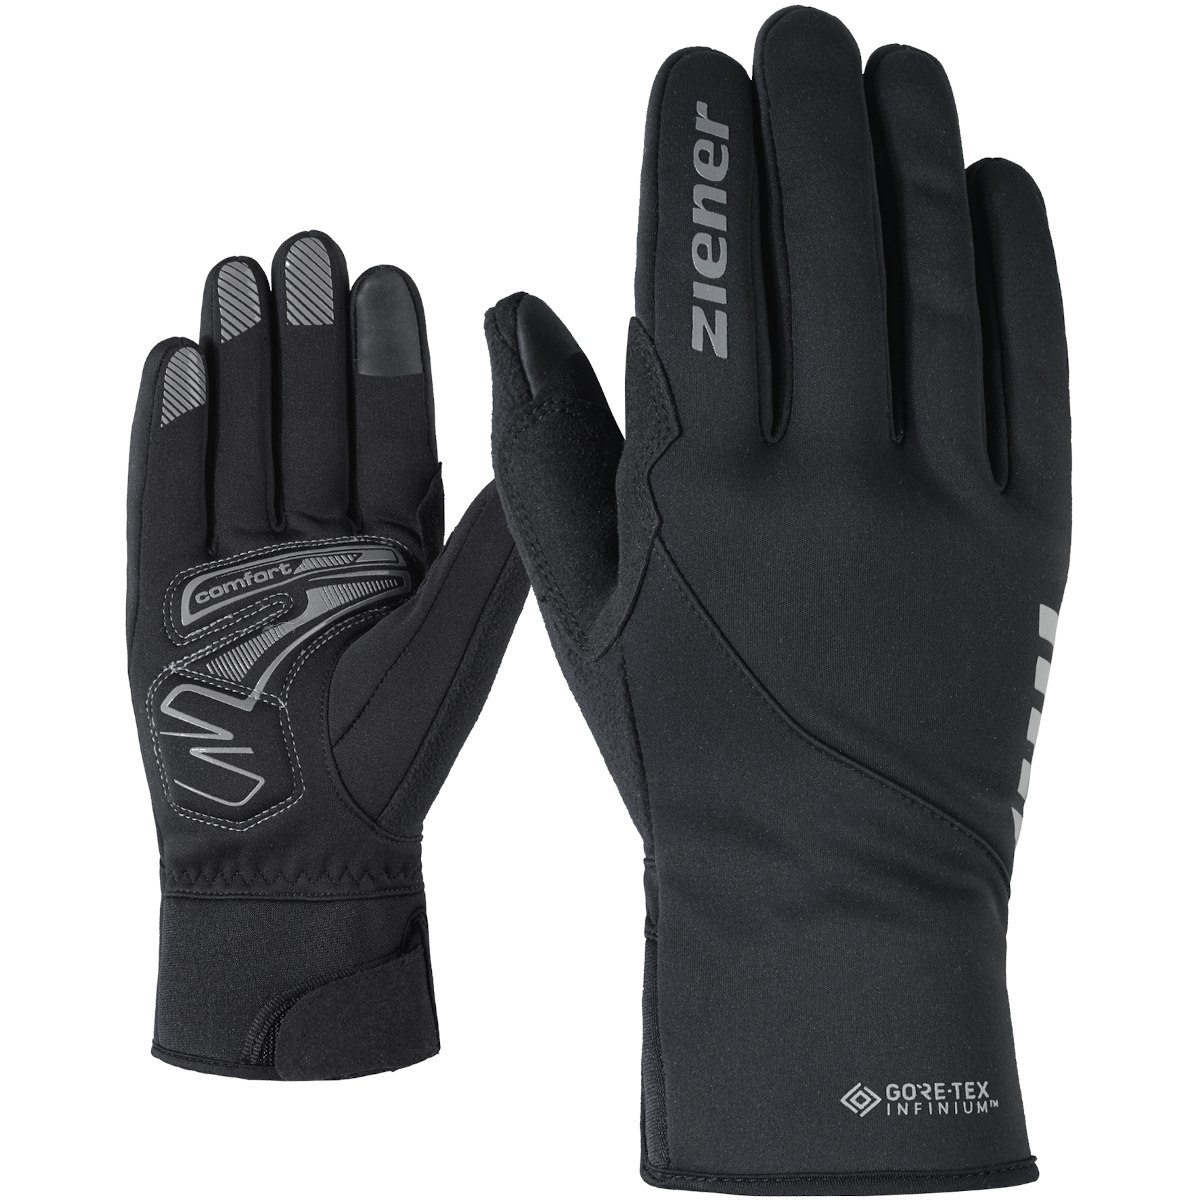 Productfoto van Ziener Dagur GTX Infinium Touch Bike Winter-Fullfinger Glove - black